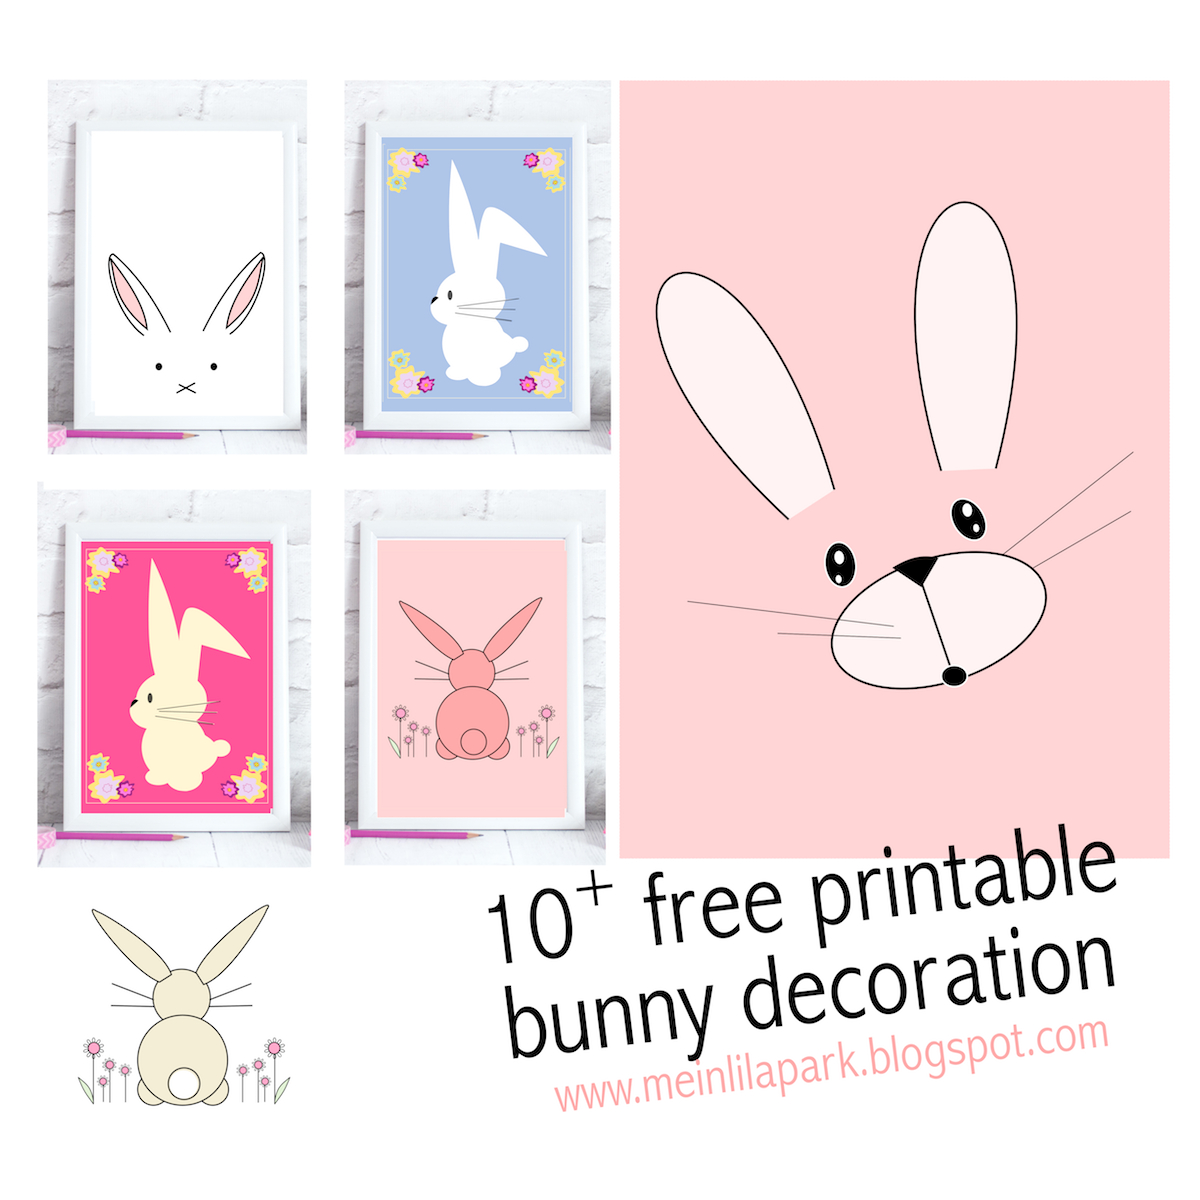 Free Printable Bunny Nursery Decoration - Round Up | Meinlilapark - Free Printable Bunny Pictures